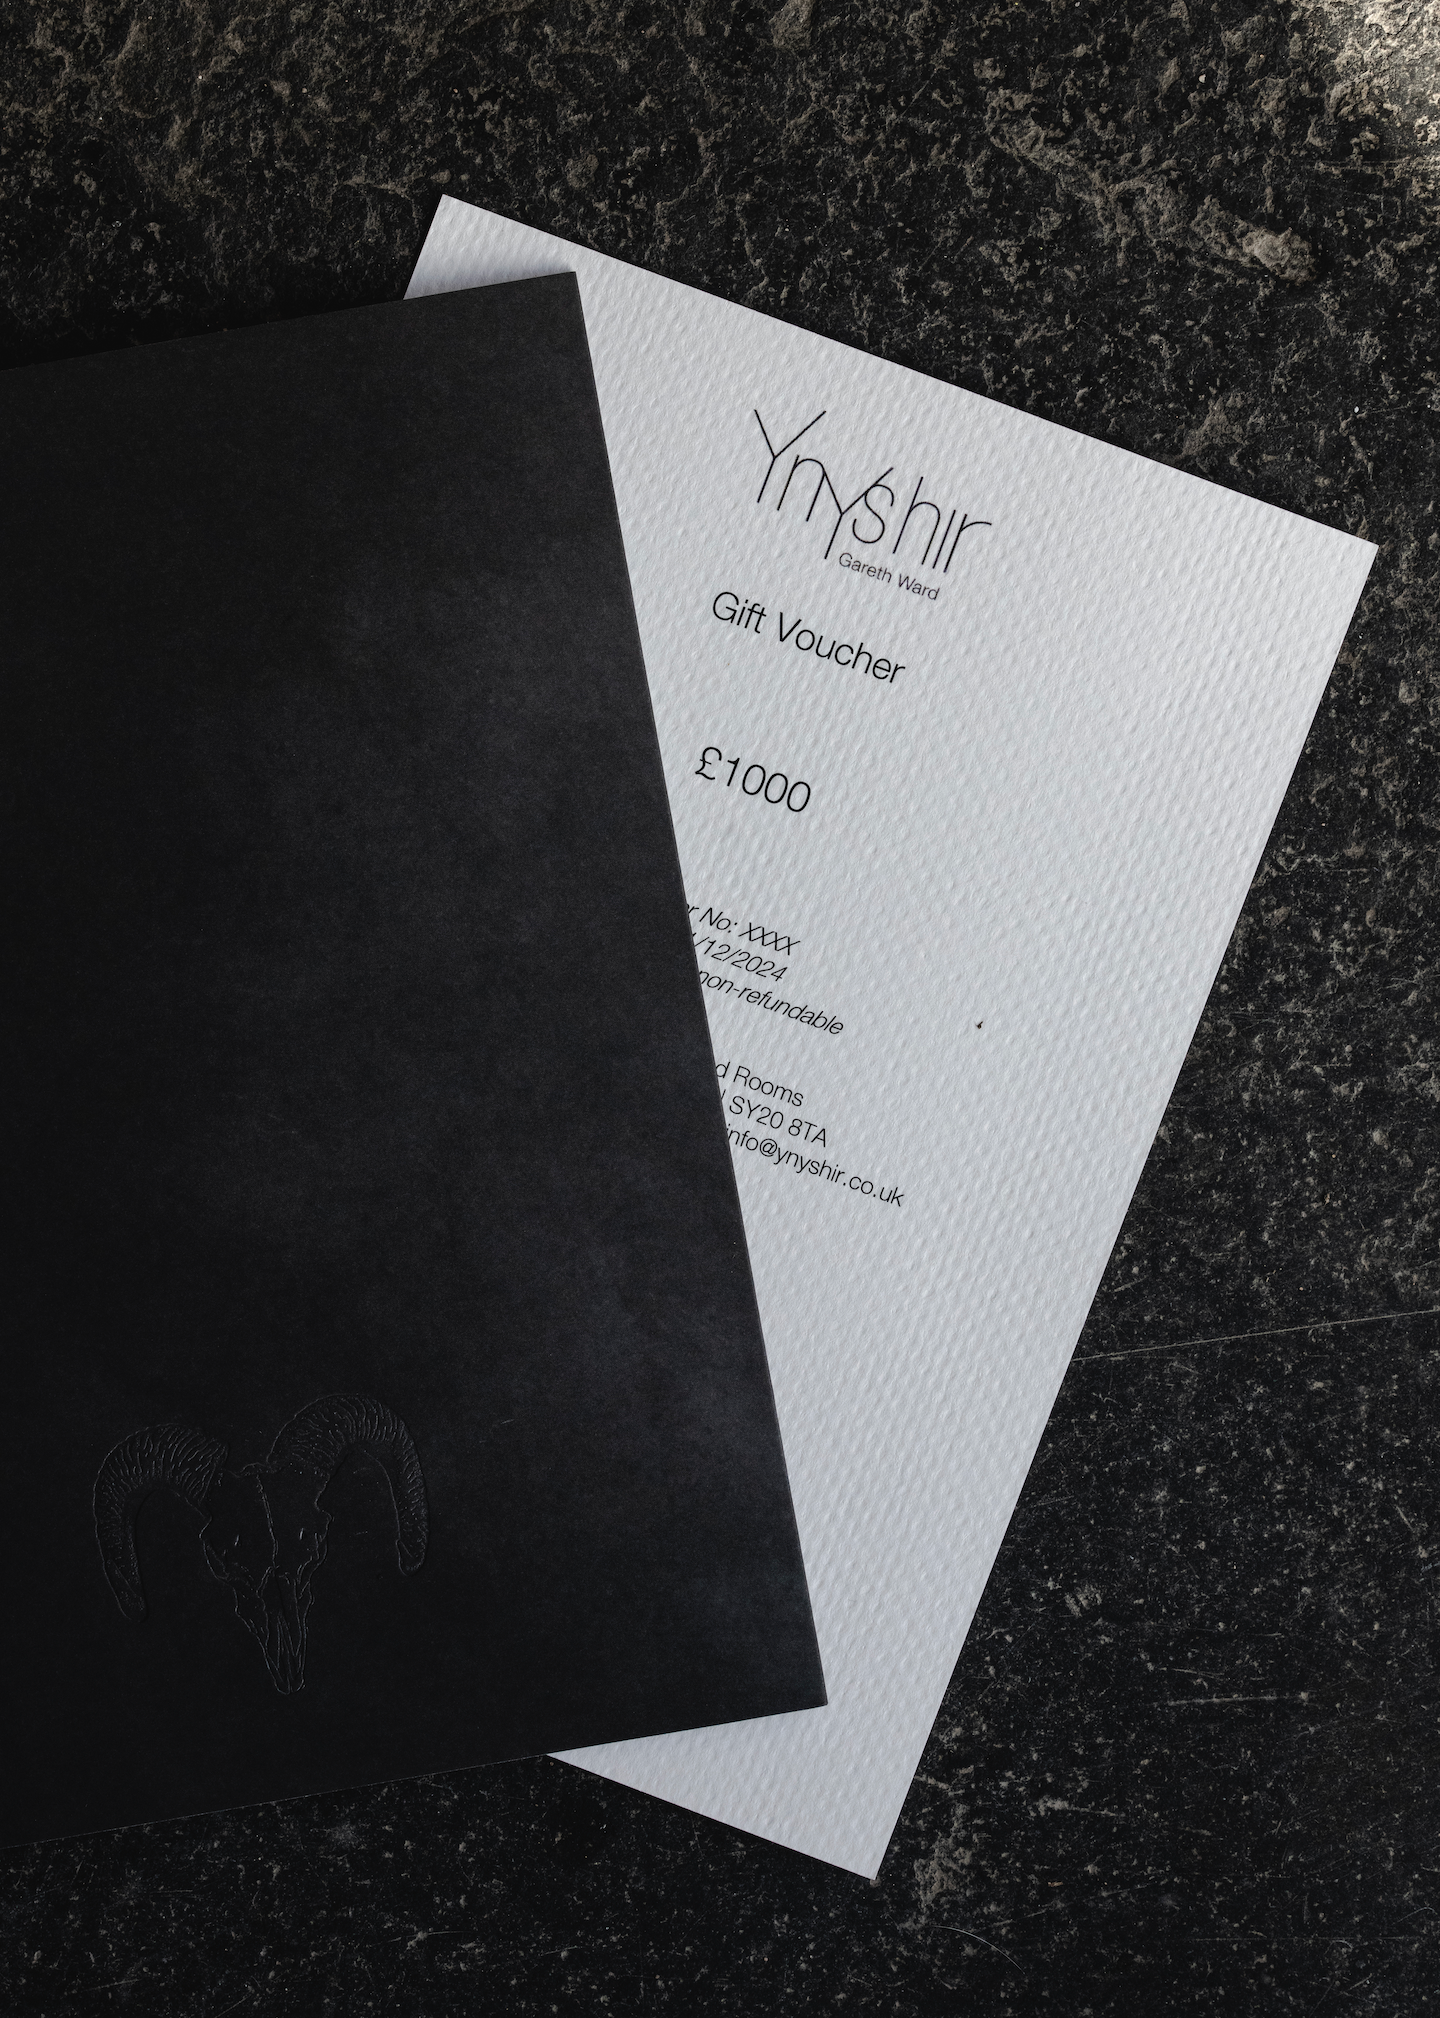 Postal Voucher - Ynyshir Restaurant